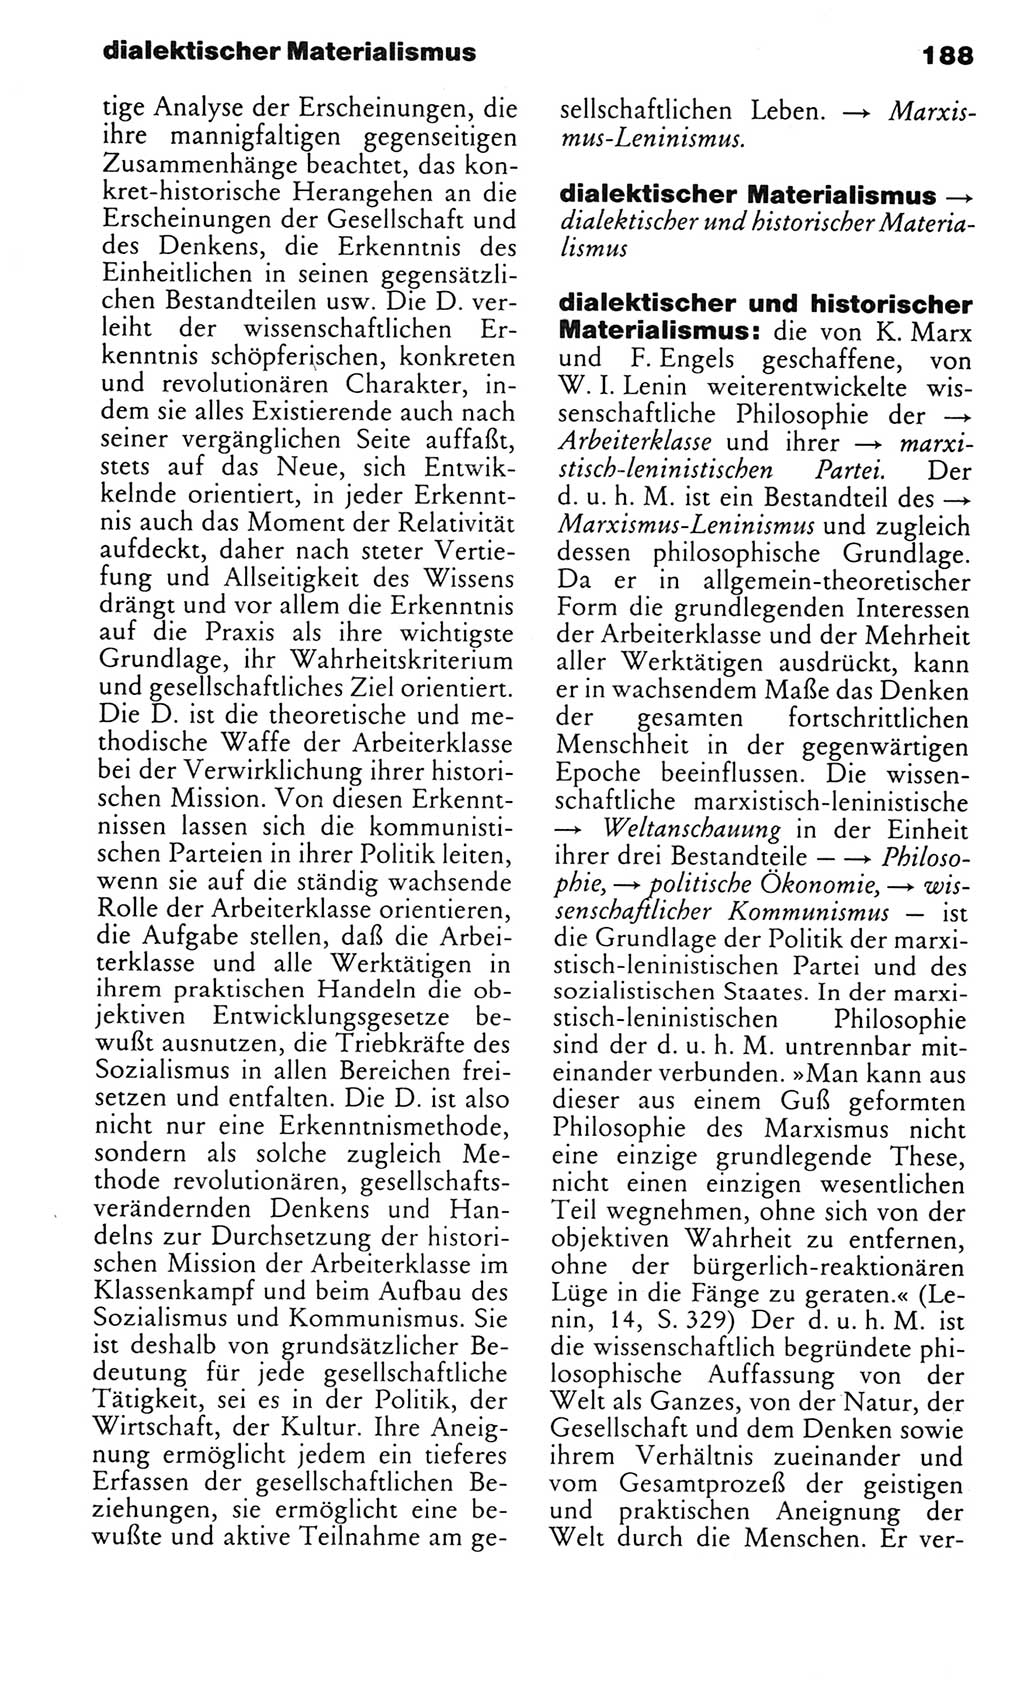 Kleines politisches Wörterbuch [Deutsche Demokratische Republik (DDR)] 1985, Seite 188 (Kl. pol. Wb. DDR 1985, S. 188)